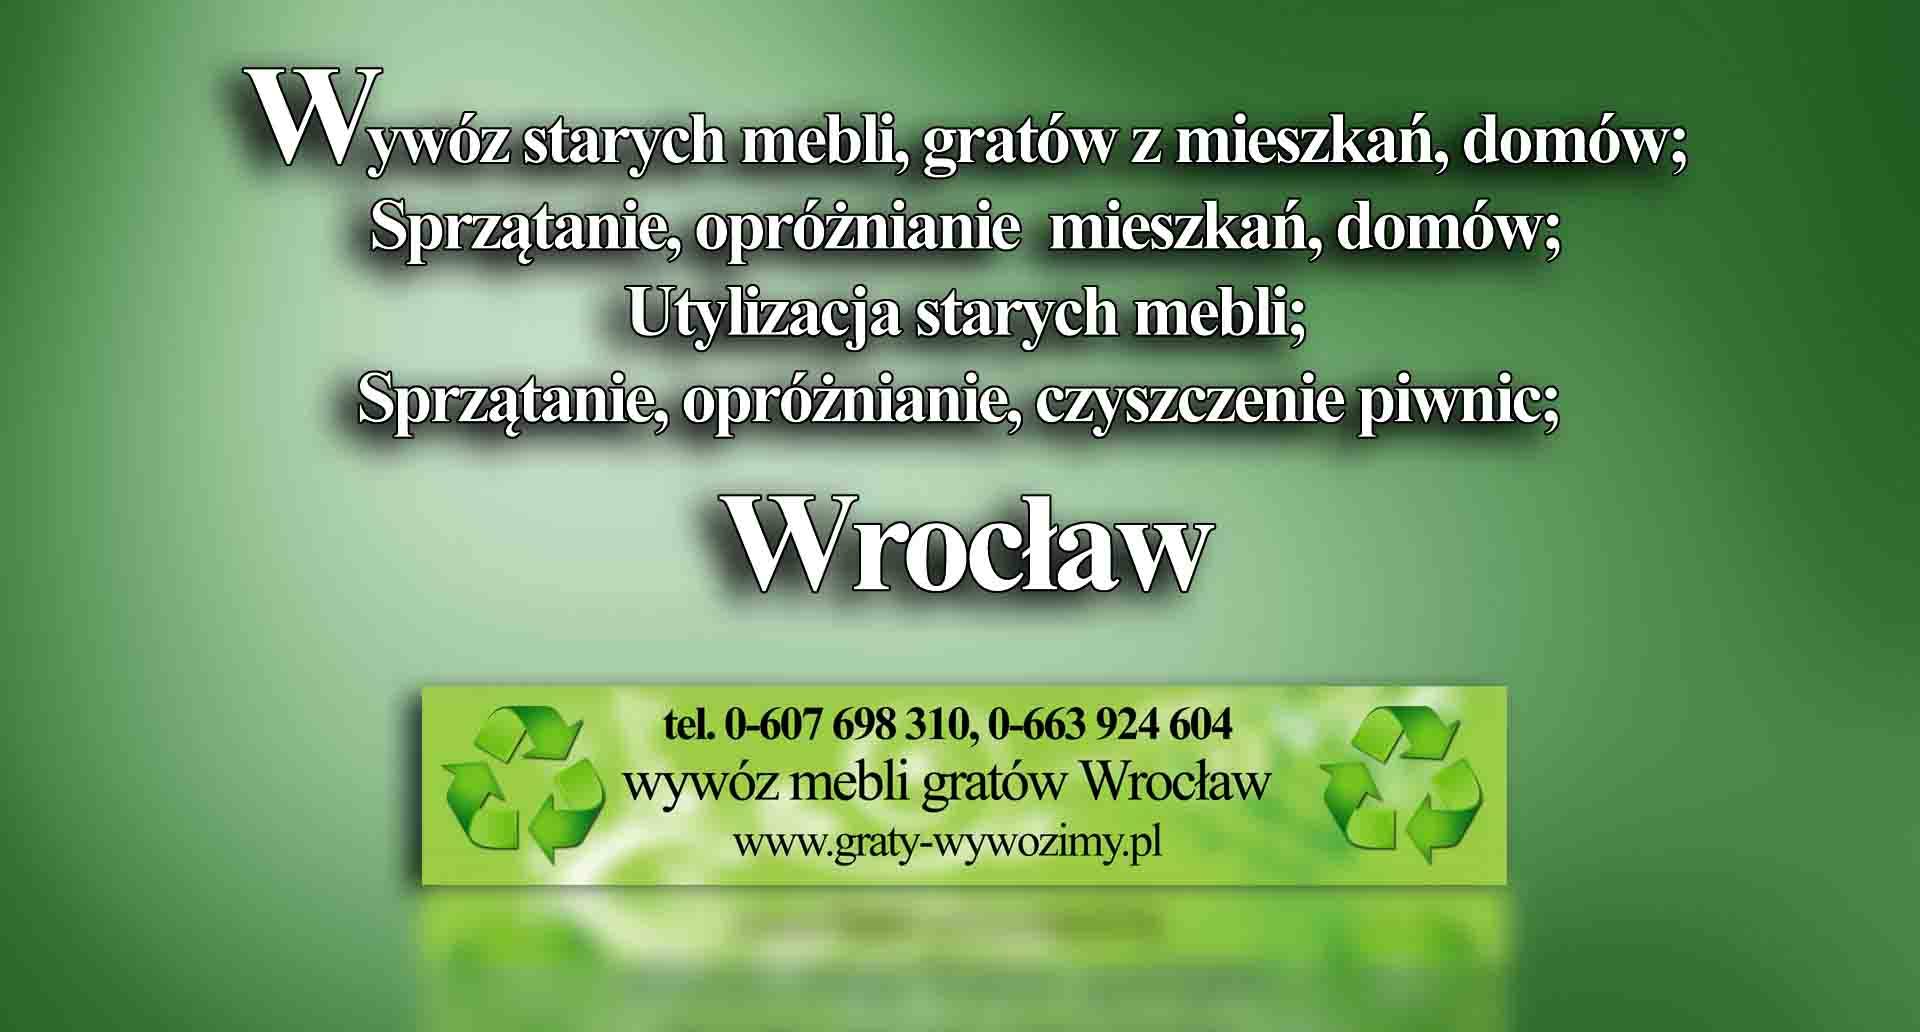 Wywóz mebli Wrocław,wywóz starych mebli Wrocław,utylizacja mebli Wrocław